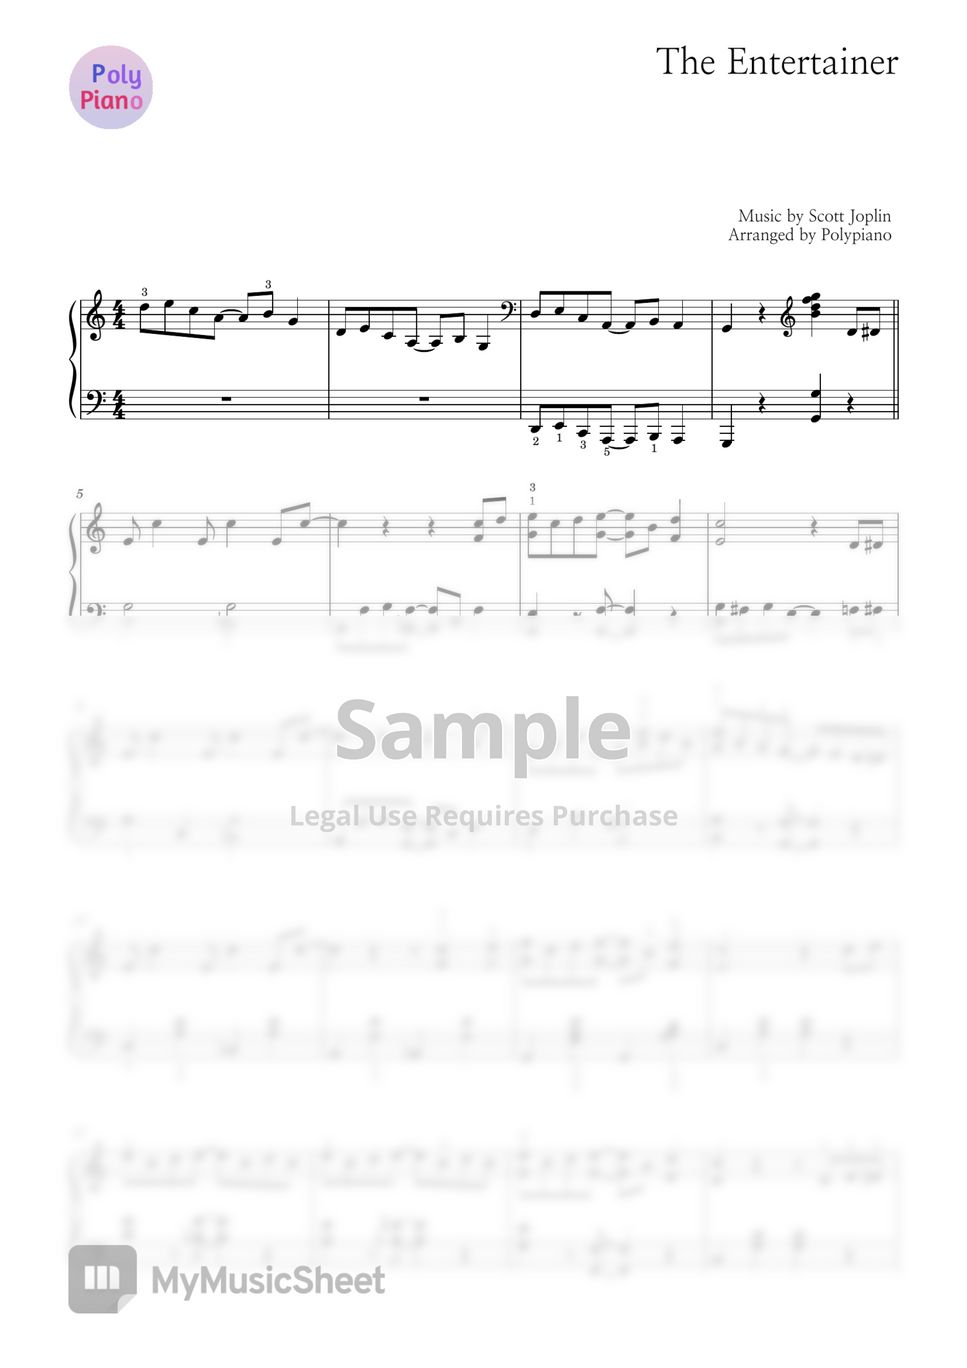 Scott Joplin - The entertainer (Swing solo) by POLYPiano